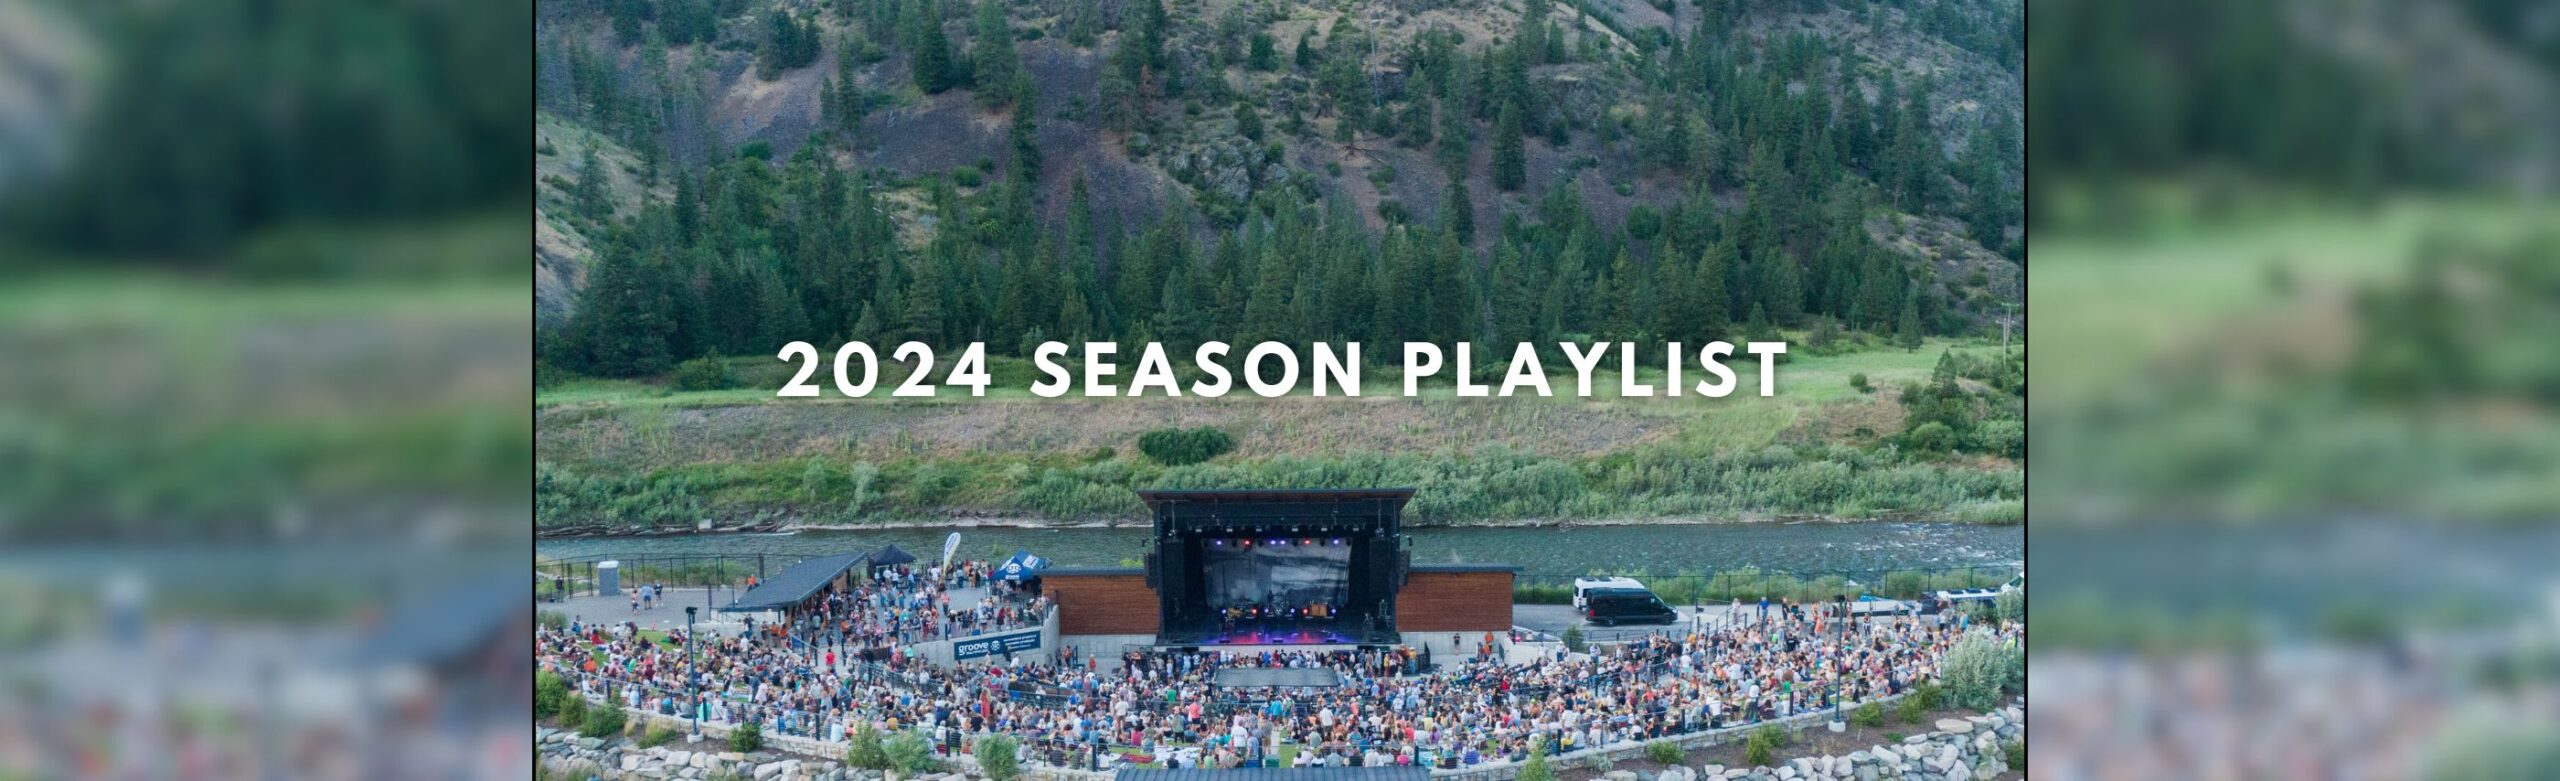 Listen: KettleHouse Amphitheater 2024 Season Playlist Image